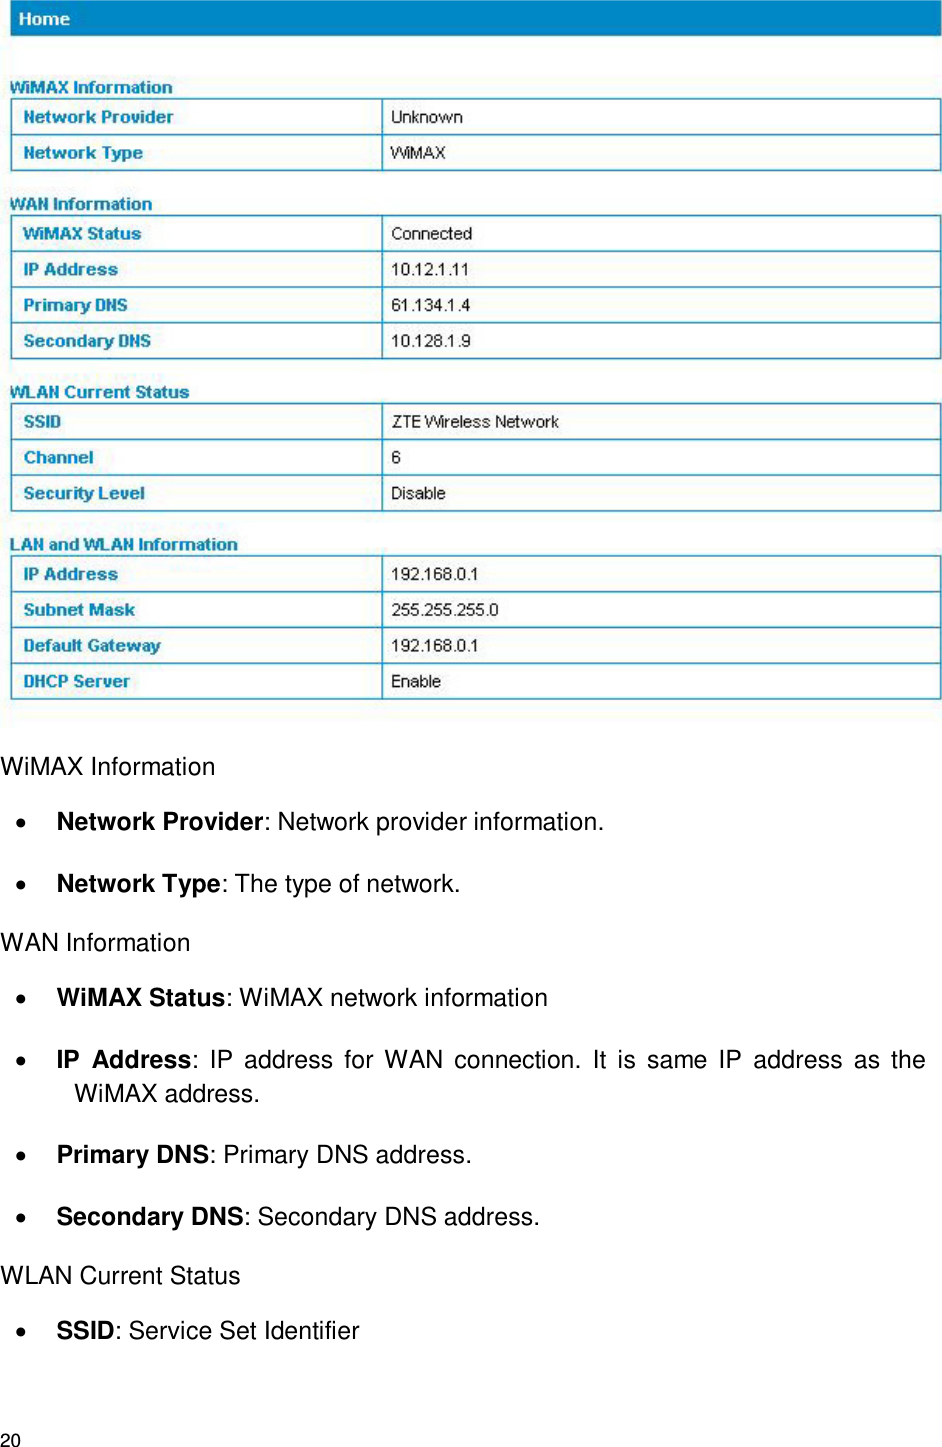 20  WiMAX Information  Network Provider: Network provider information.  Network Type: The type of network. WAN Information  WiMAX Status: WiMAX network information  IP  Address:  IP  address  for WAN  connection. It  is  same IP  address  as  the WiMAX address.  Primary DNS: Primary DNS address.  Secondary DNS: Secondary DNS address. WLAN Current Status  SSID: Service Set Identifier 